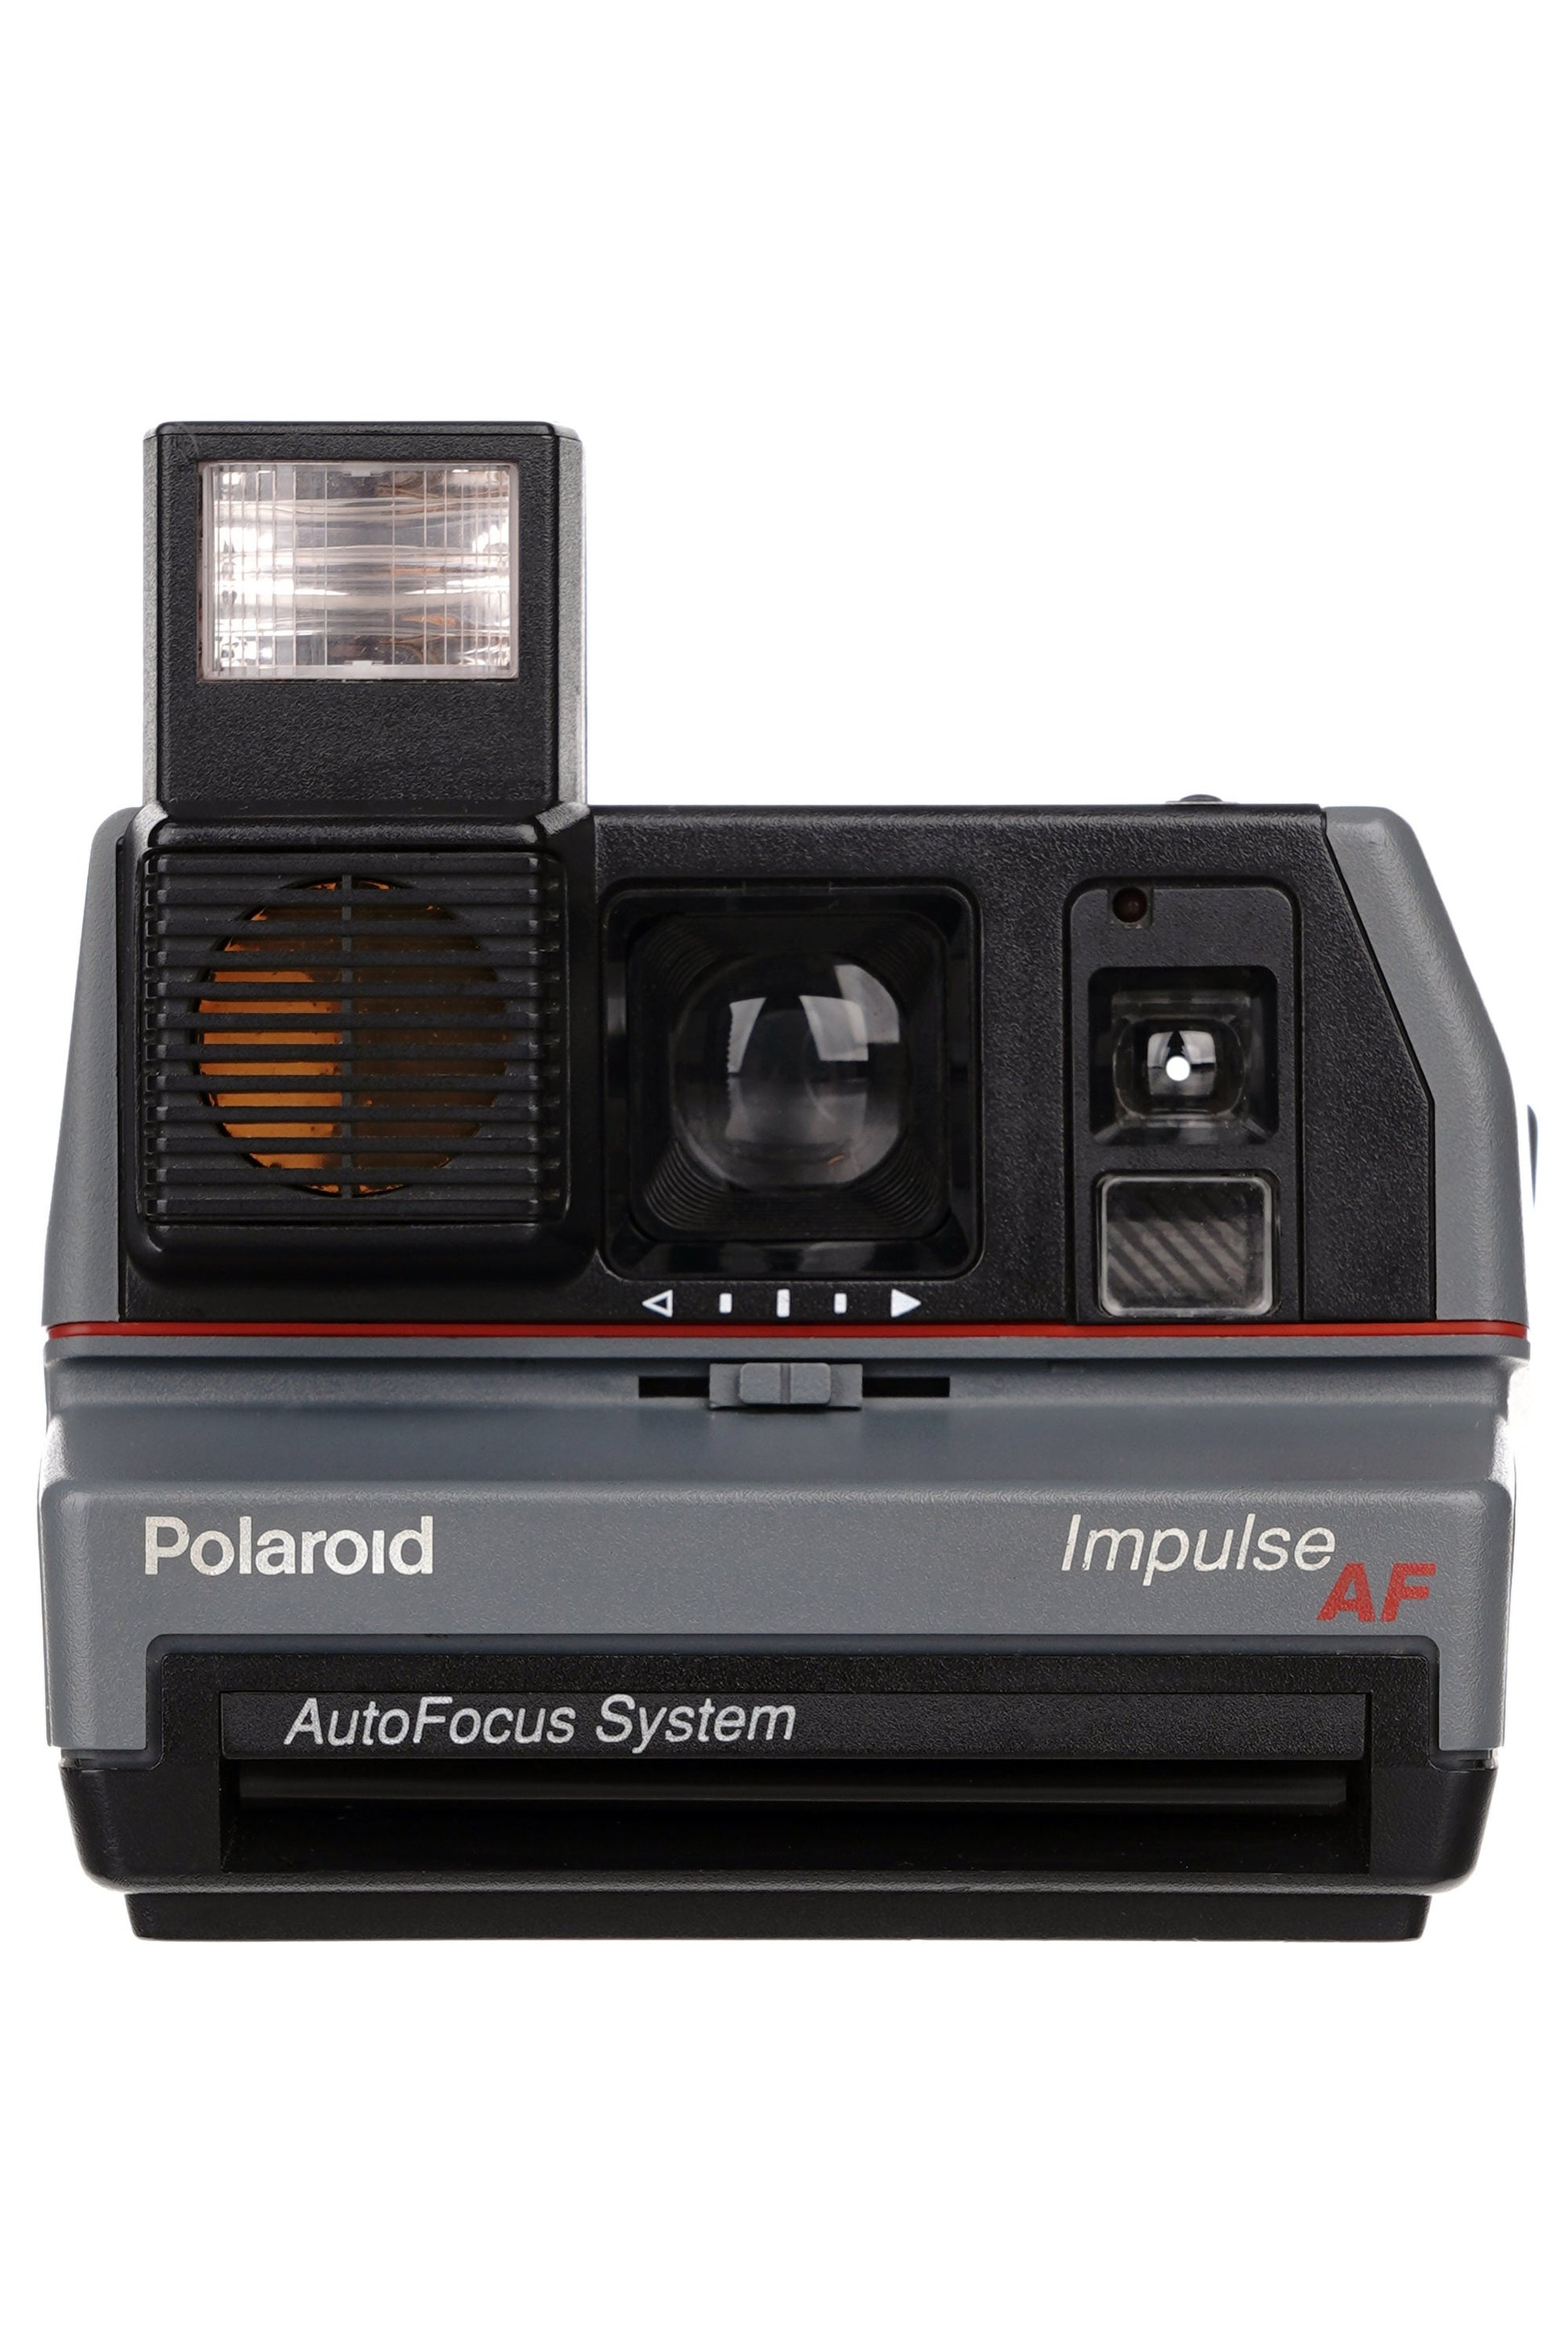 Polaroid Impulse Portait Instant Film Old Fashioned Polaroid Camera Autofocus AF - Vintage Polaroid Instant Cameras